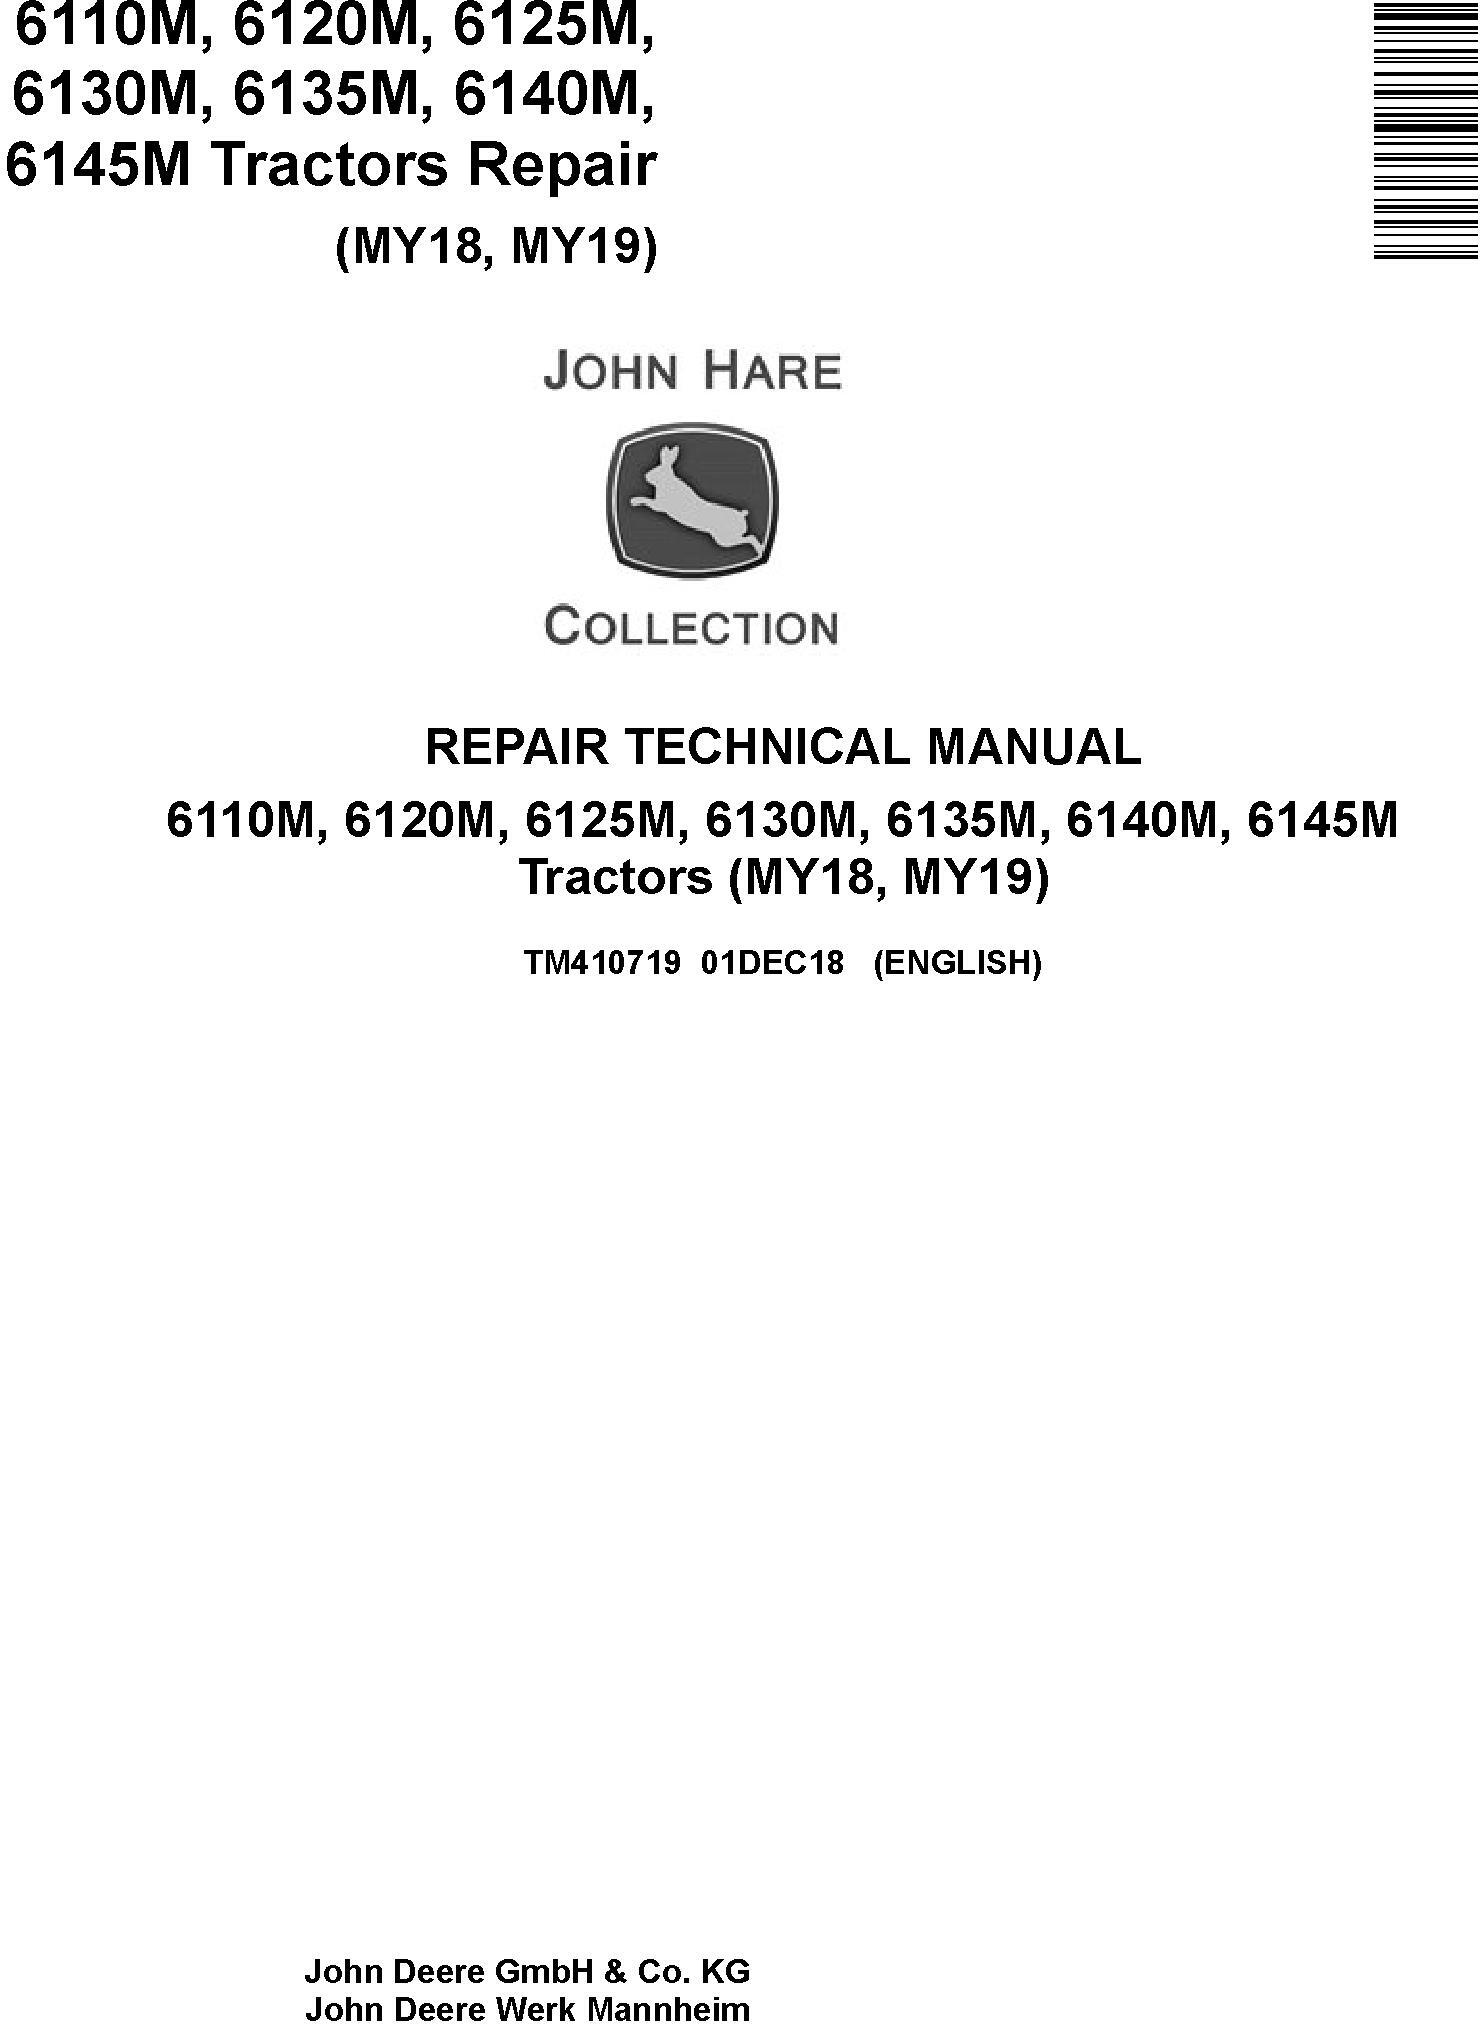 John Deere 6110M to 6145M Tractor Repair Technical Manual TM410719